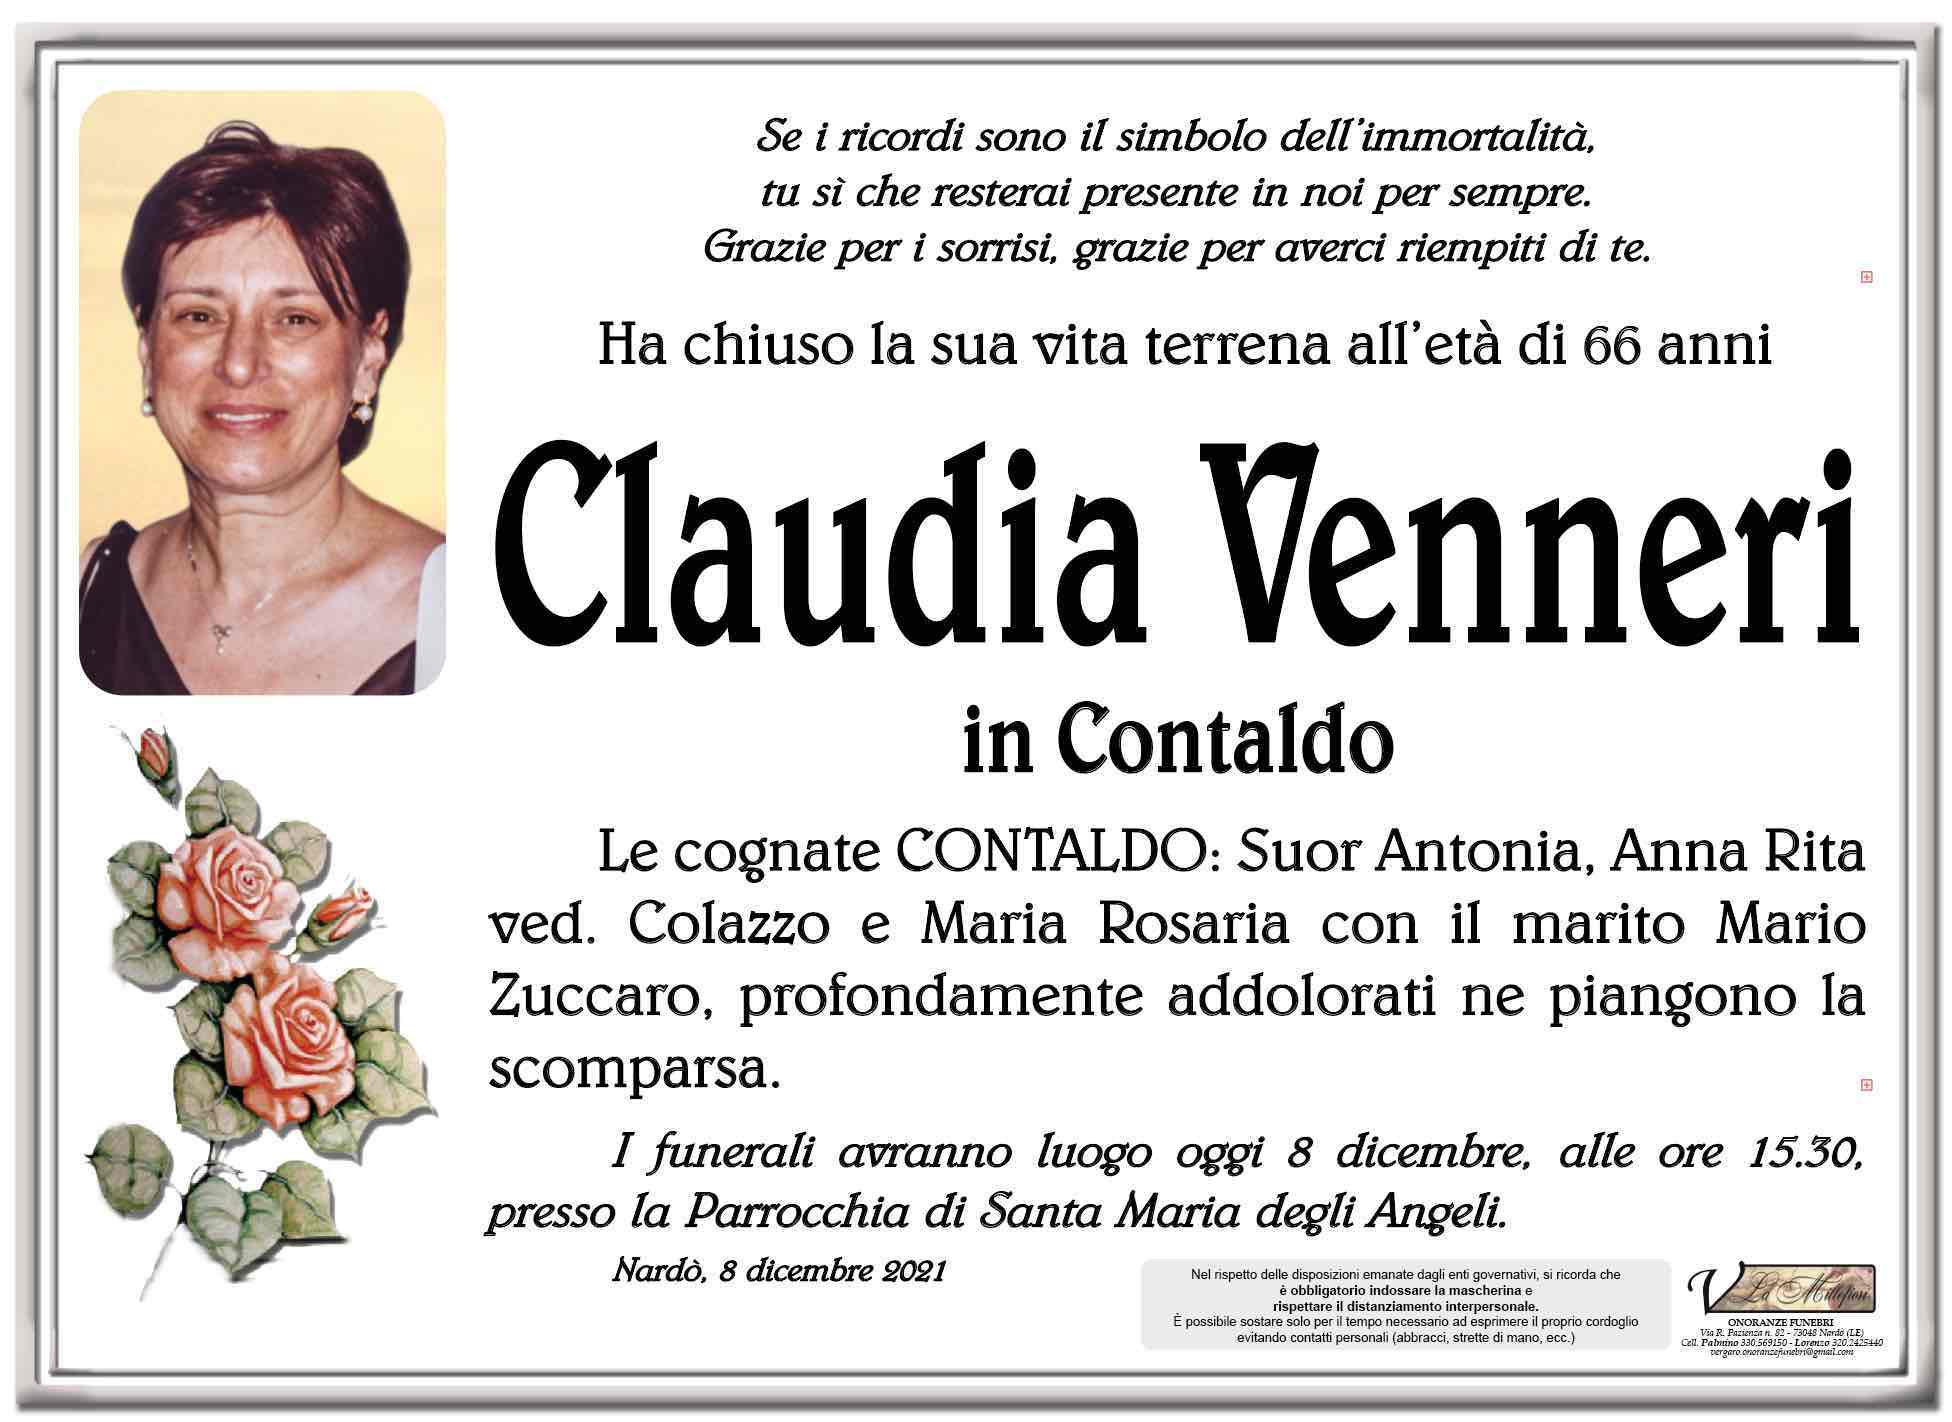 Claudia Venneri